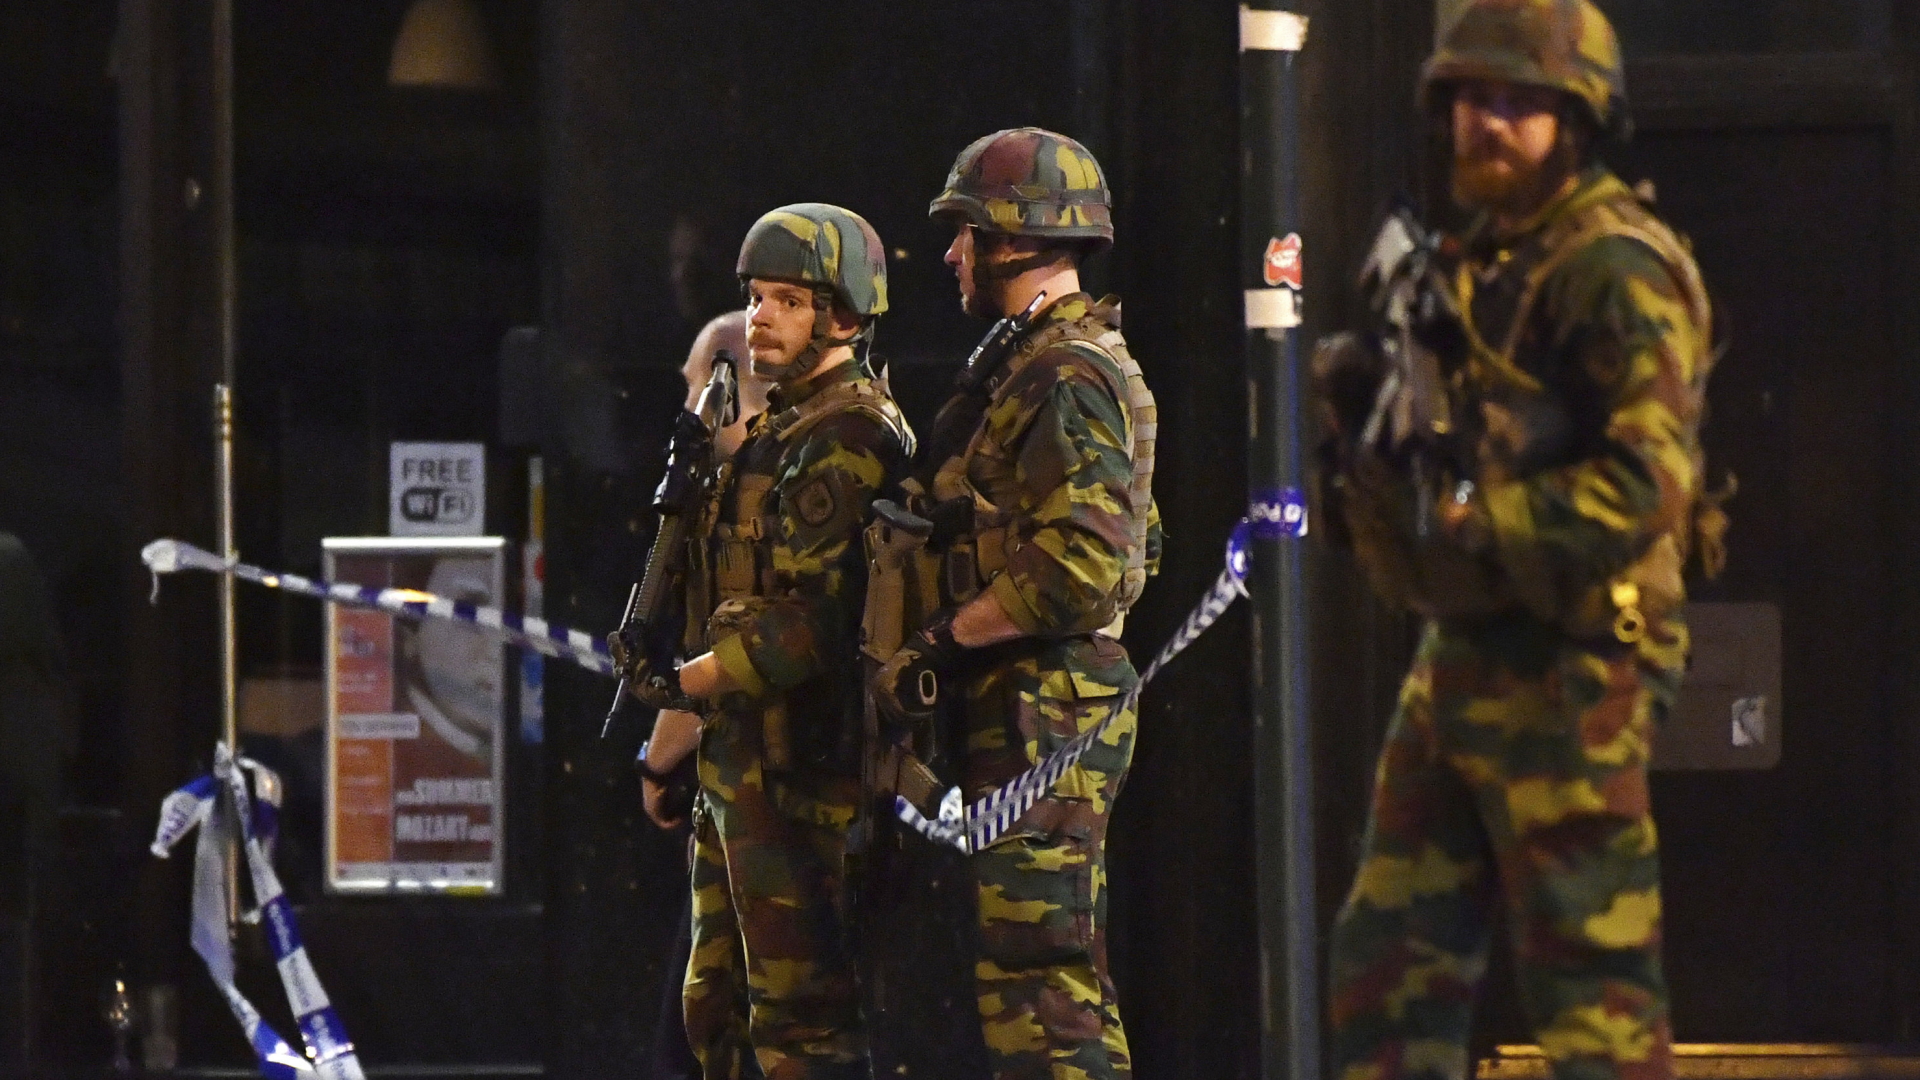 Bewaffnete Polizisten patrouillieren vor dem Brüsseler Zentralbahnhof. | Bildquelle: dpa